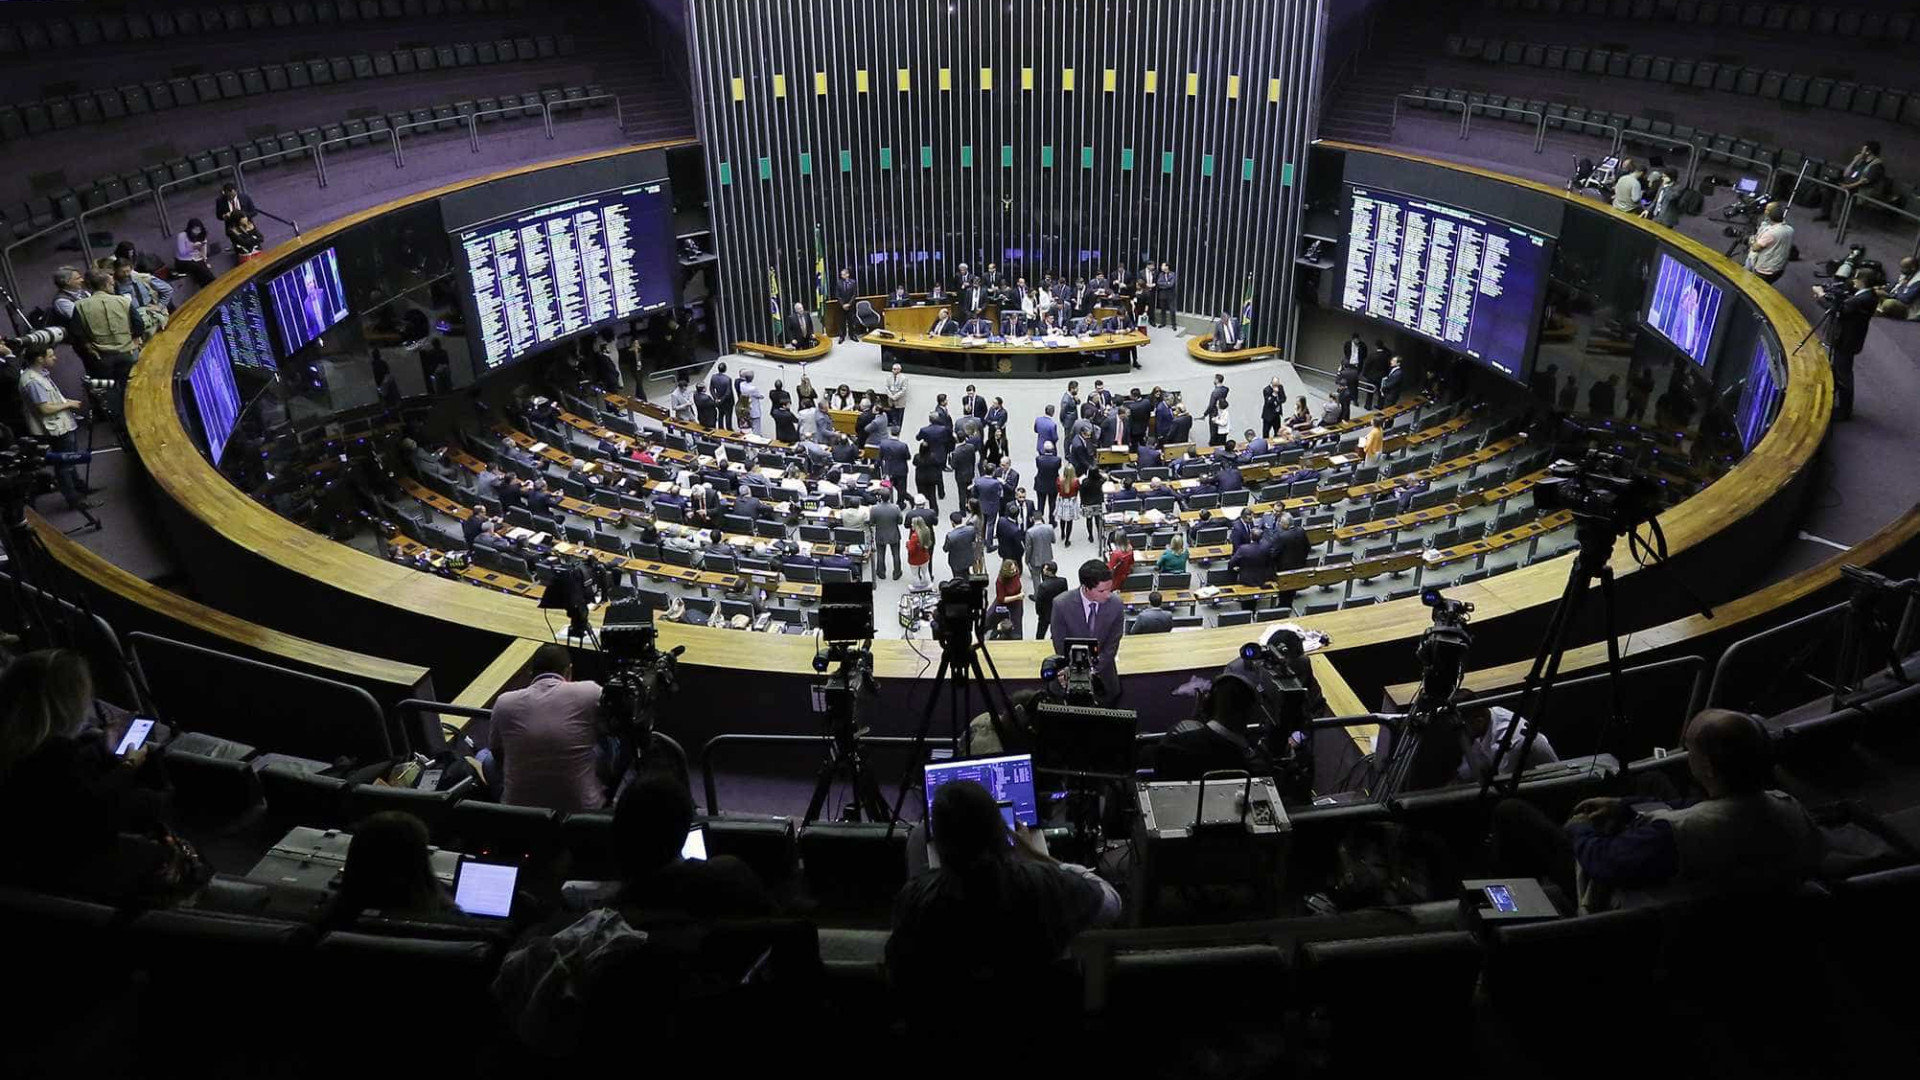 Câmara rejeita distritão e distrital misto, pilares da reforma política